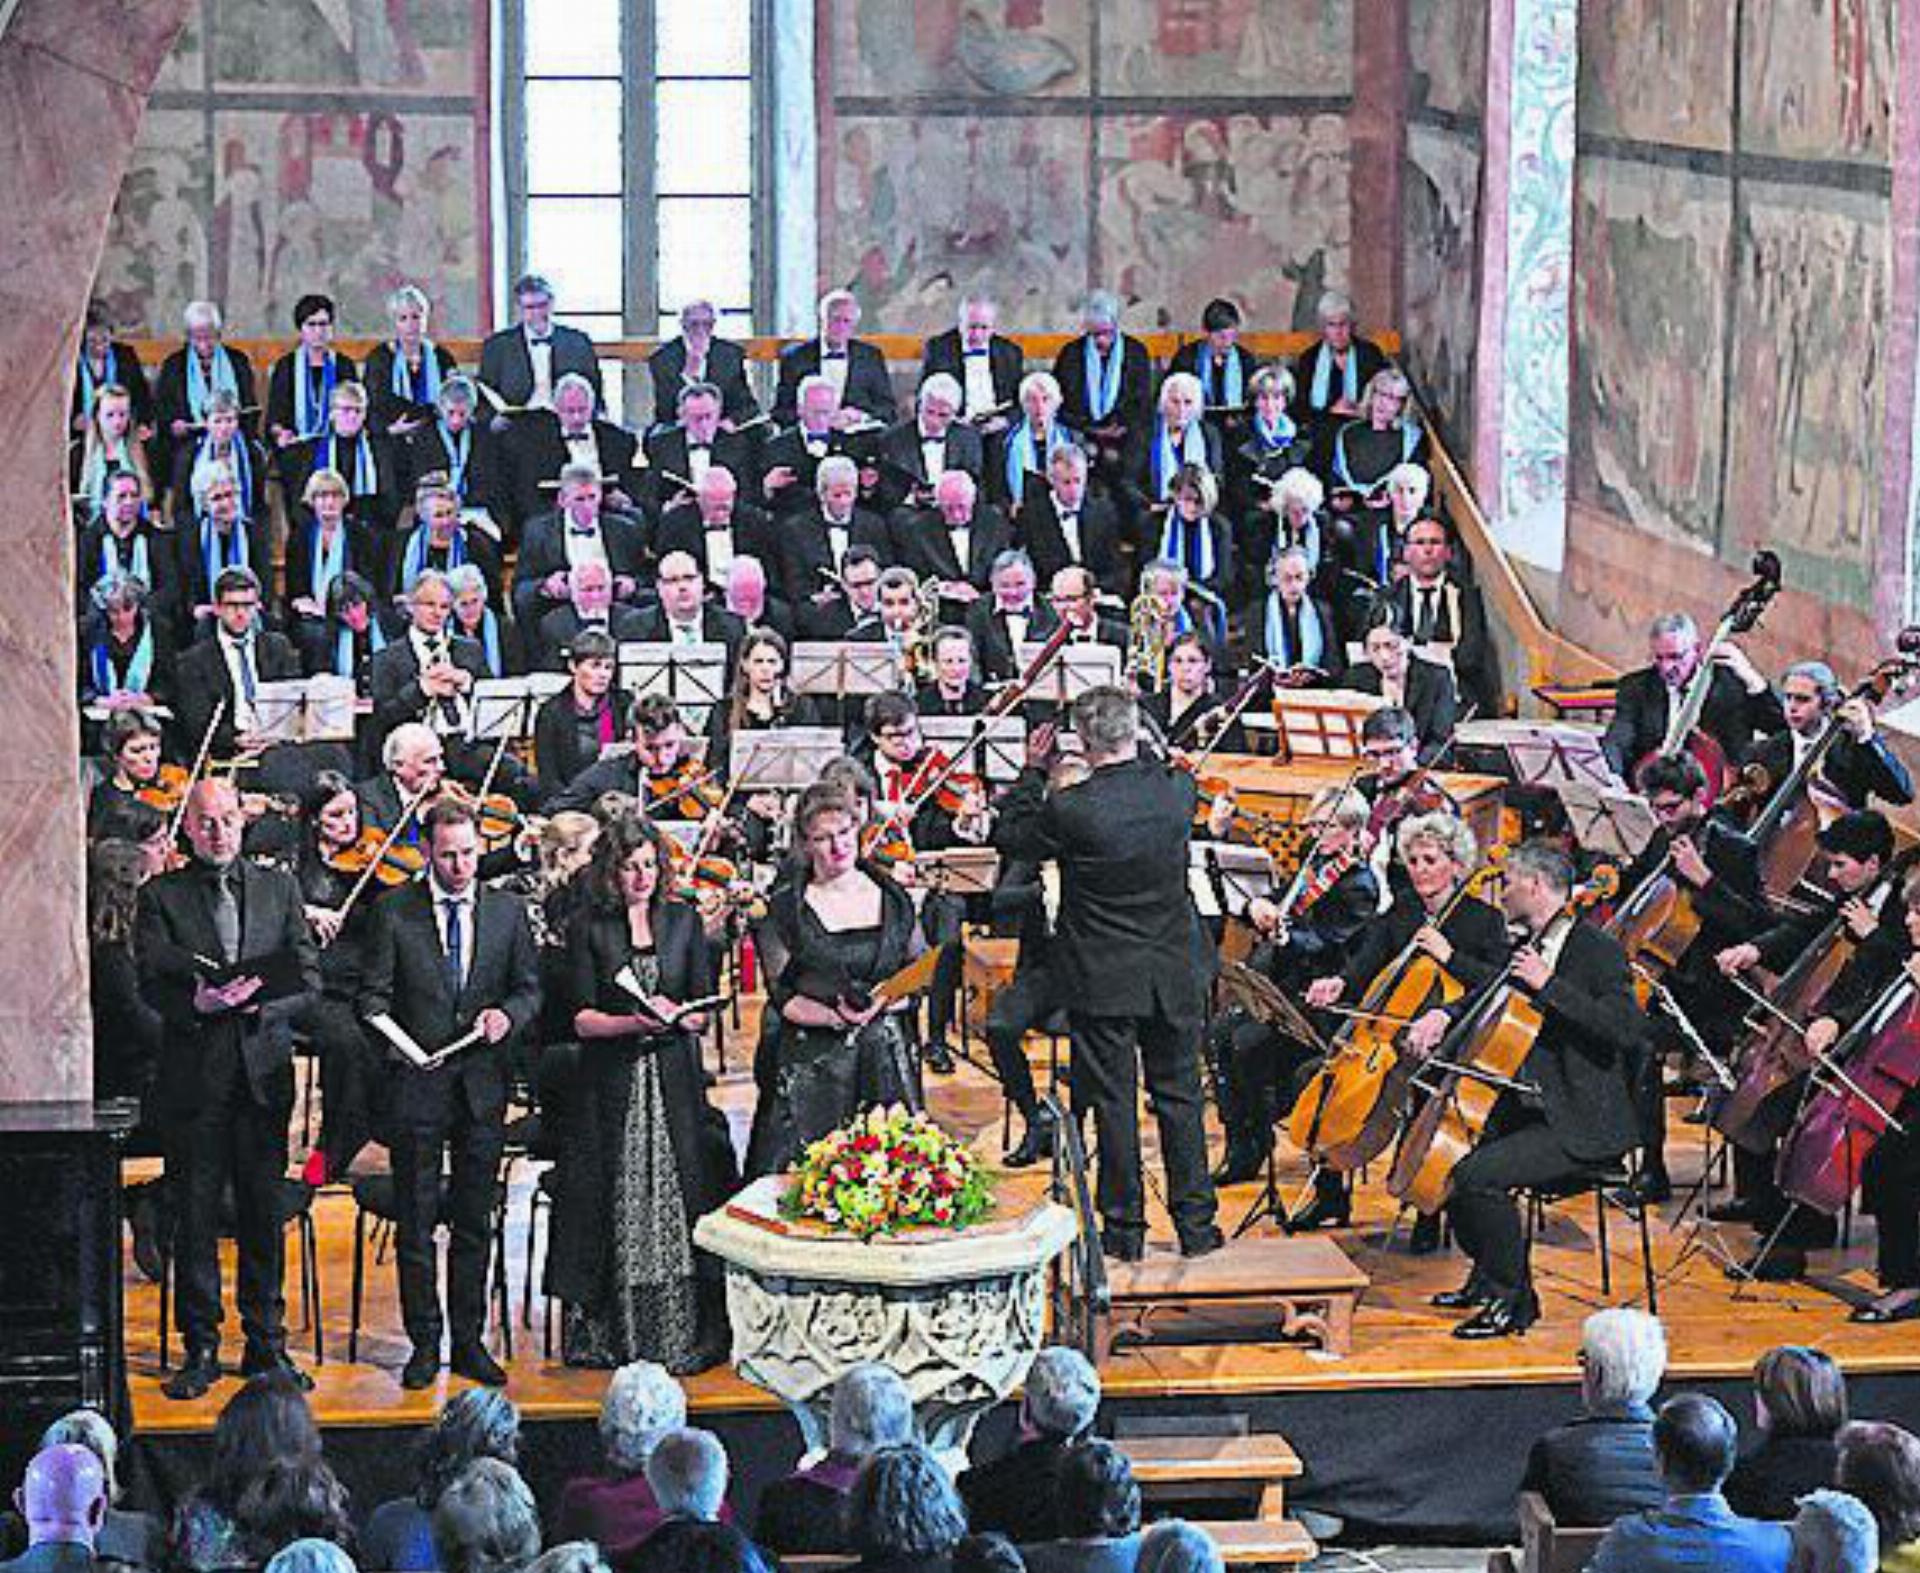 Chor und Orchester füllen die Bühne der Mauritiuskirche in Saanen – ein besonderes Erlebnis auch für die Musizierenden. FOTO: PHILIPPE CHEVALIER